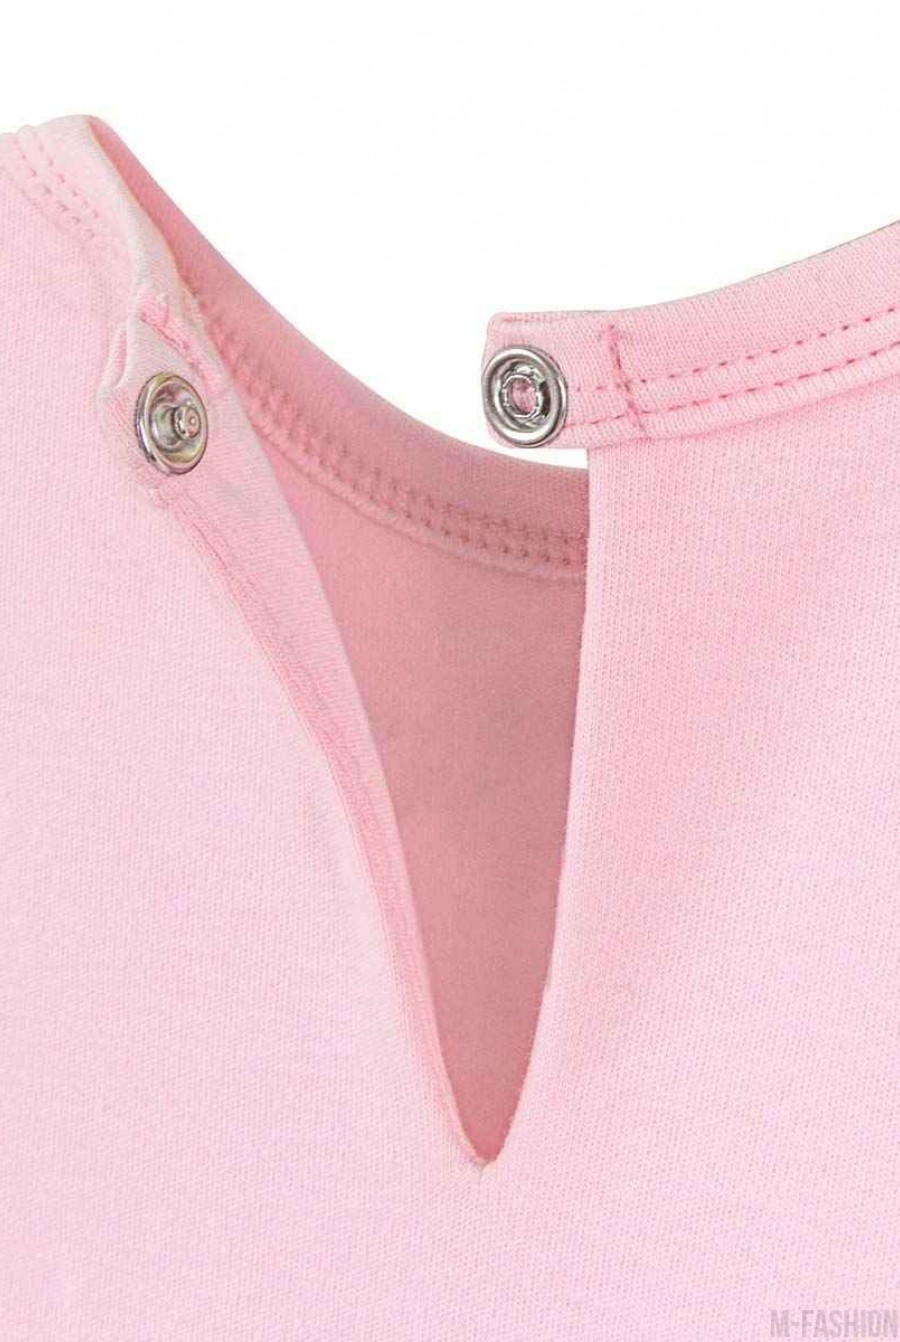 Розовое хлопковое боди с длинной фатиновой юбкой и с возможностью индивидуальной печати имени (латиница) на принте- Фото 4